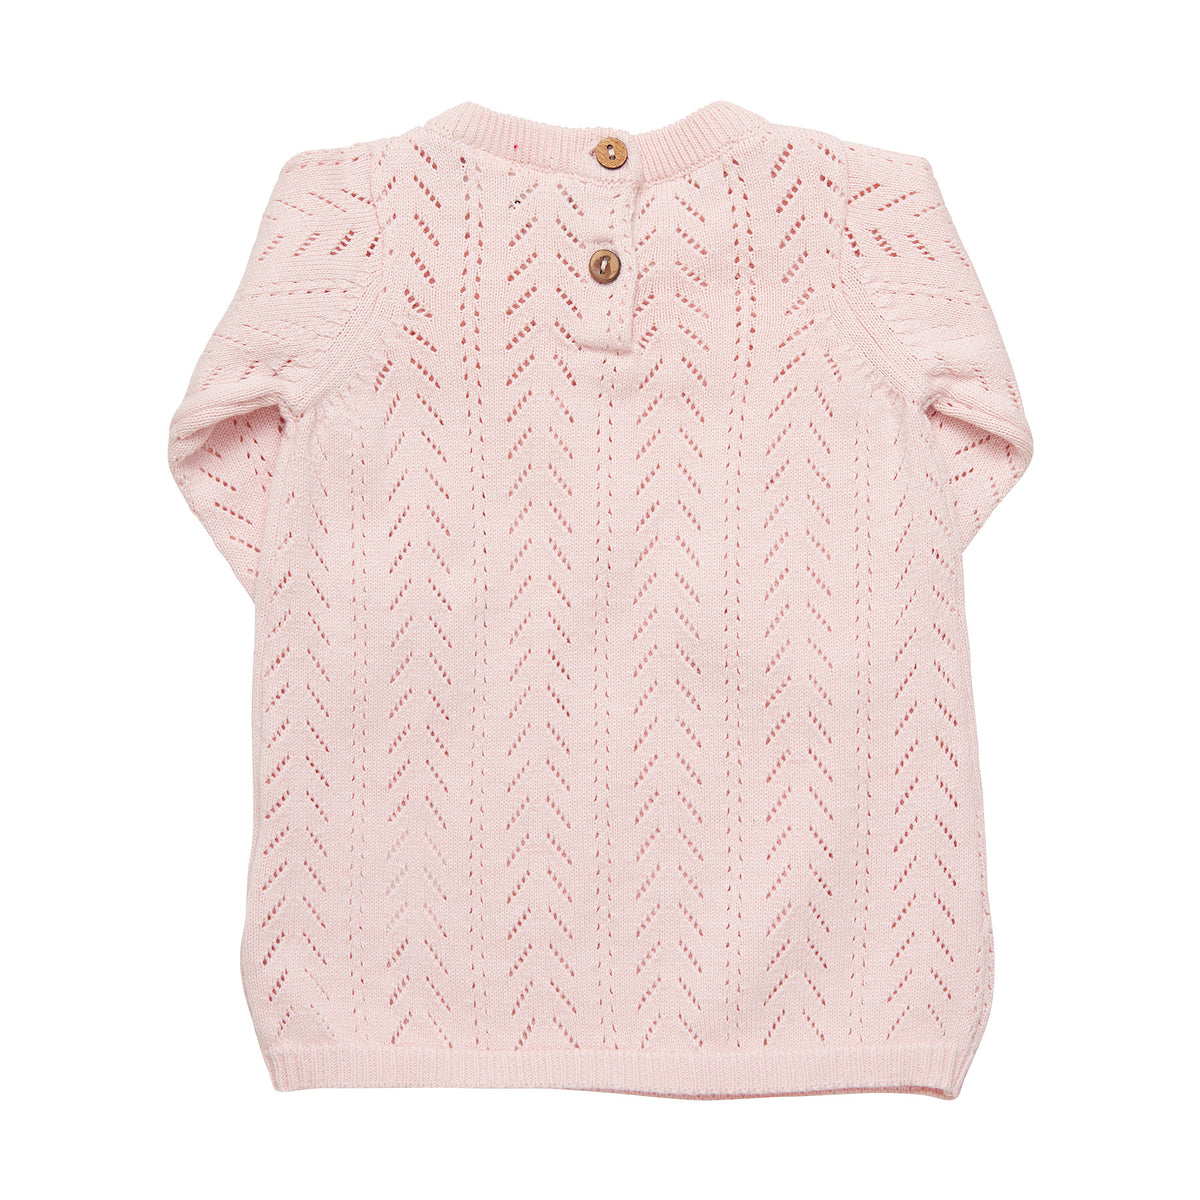 Cotton Knit Dress, Peachy Pink